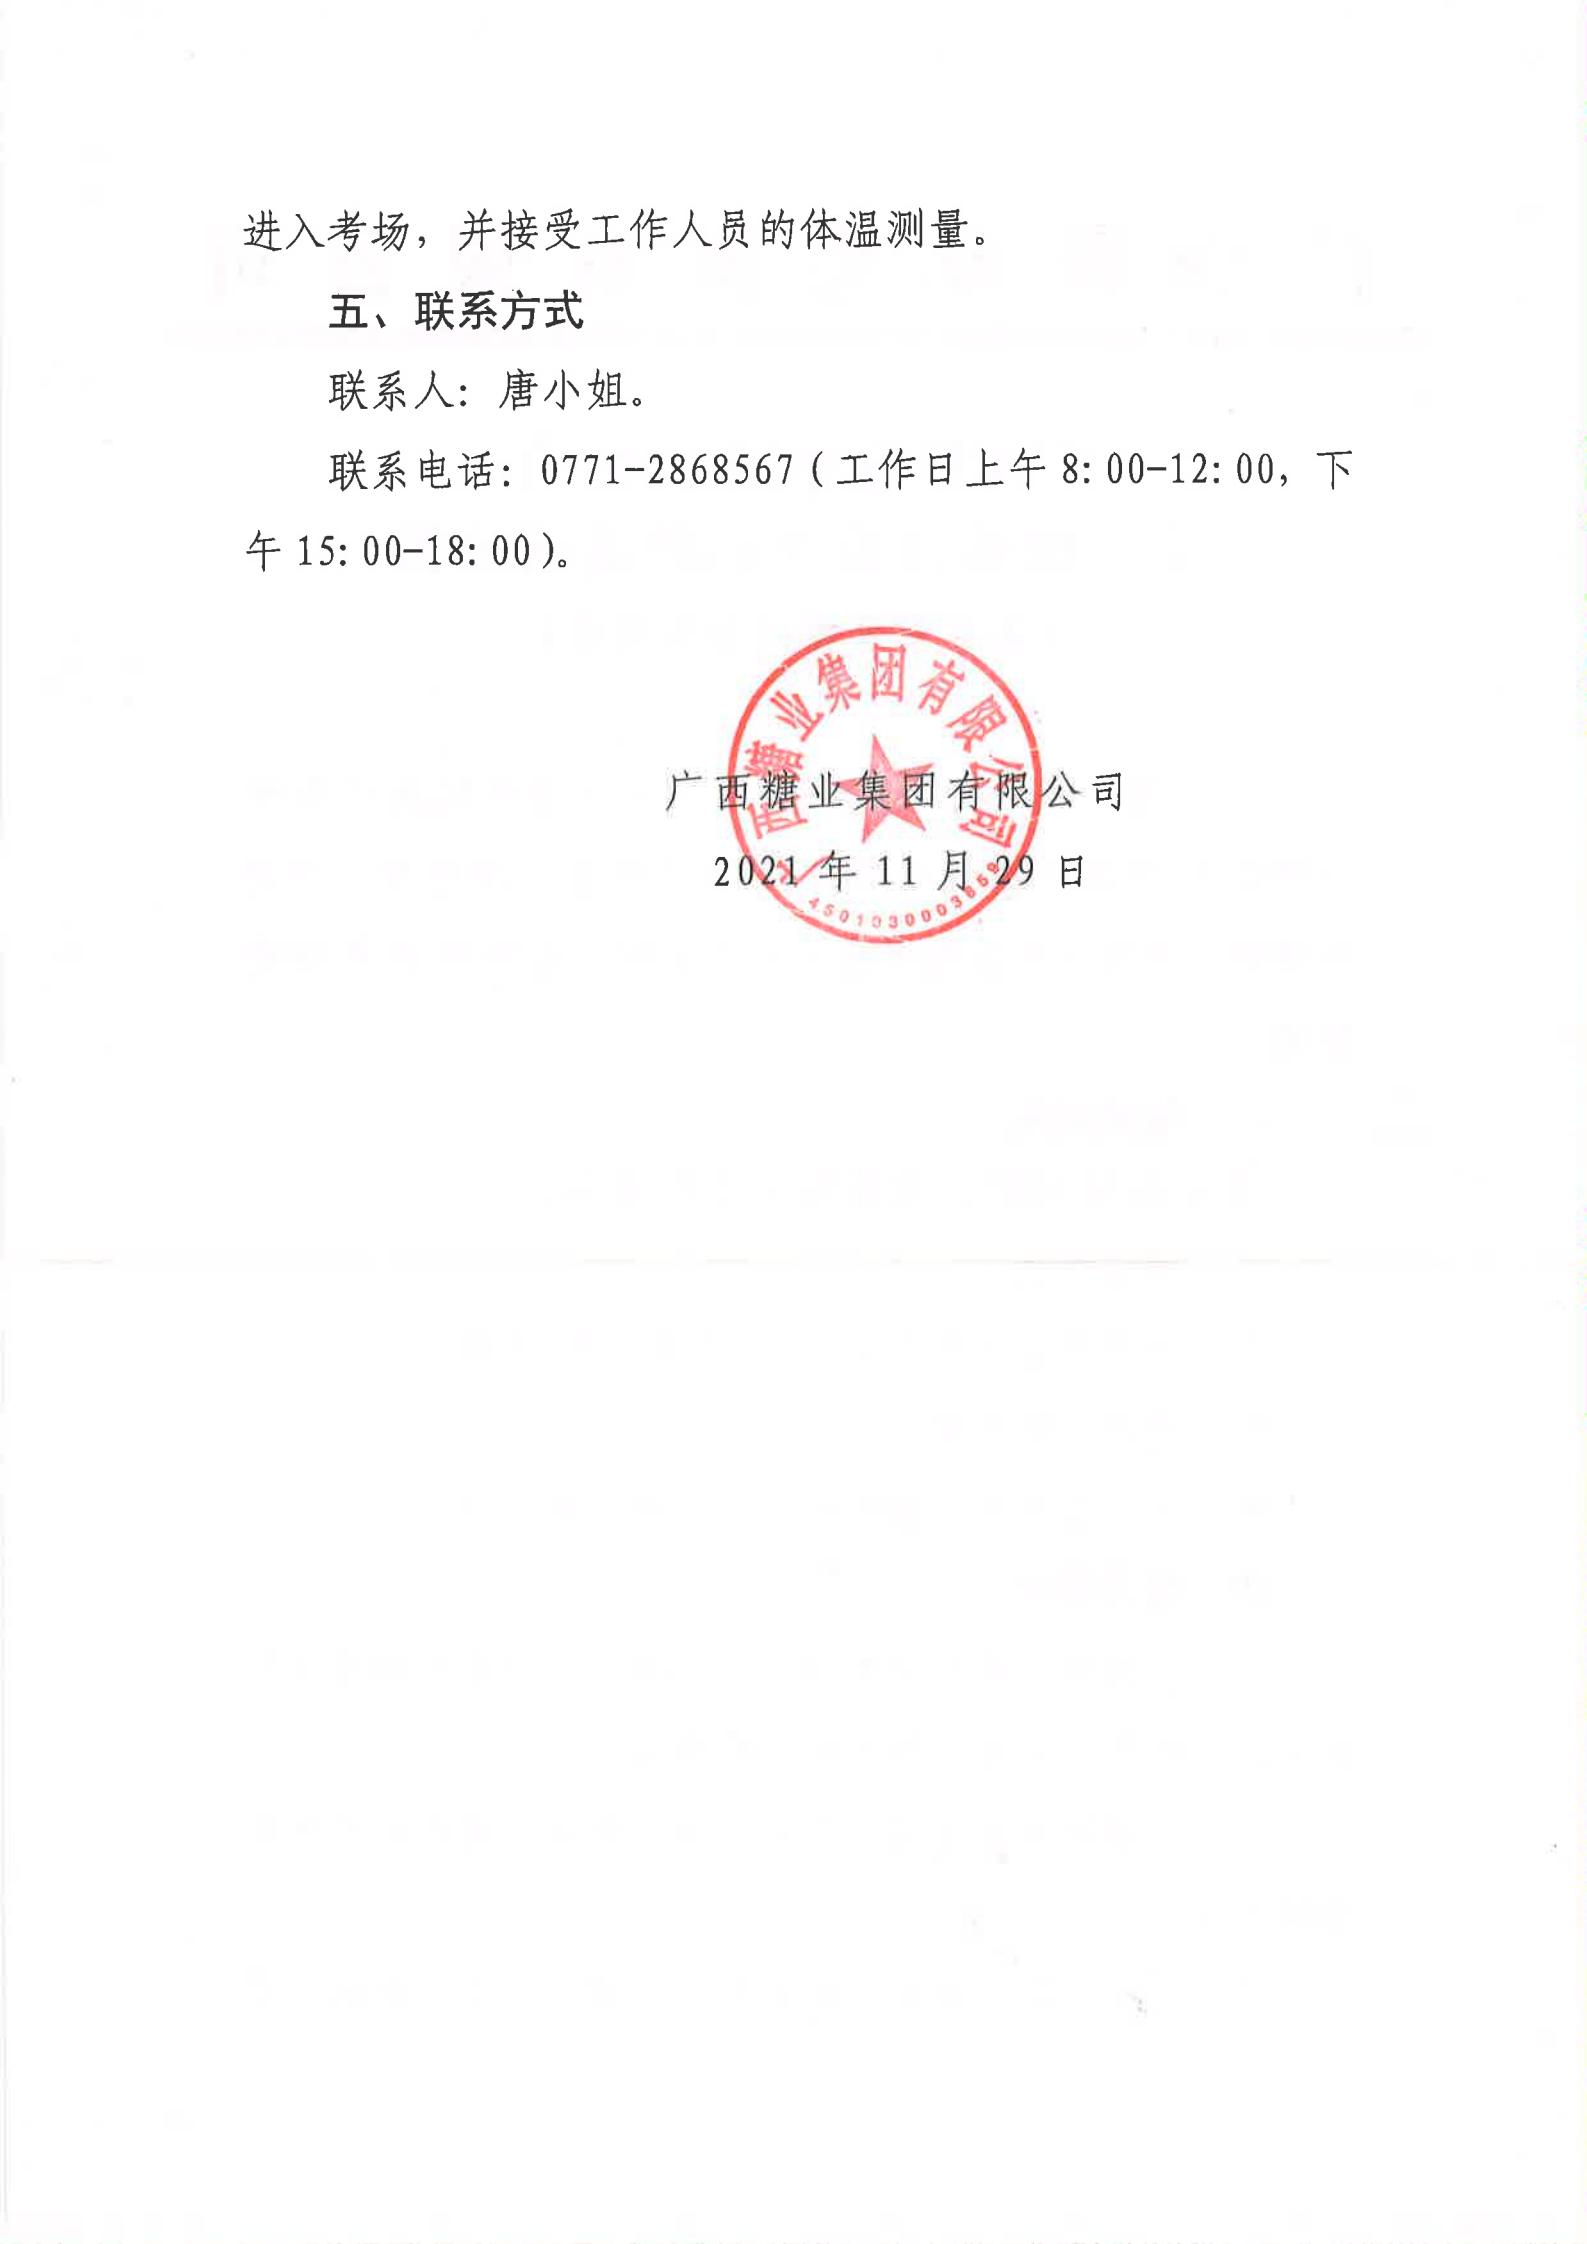 江南平台(中国)有限公司2021年第二批社会公开招聘有关岗位笔试公告（法务审计部副部长）_01.jpg